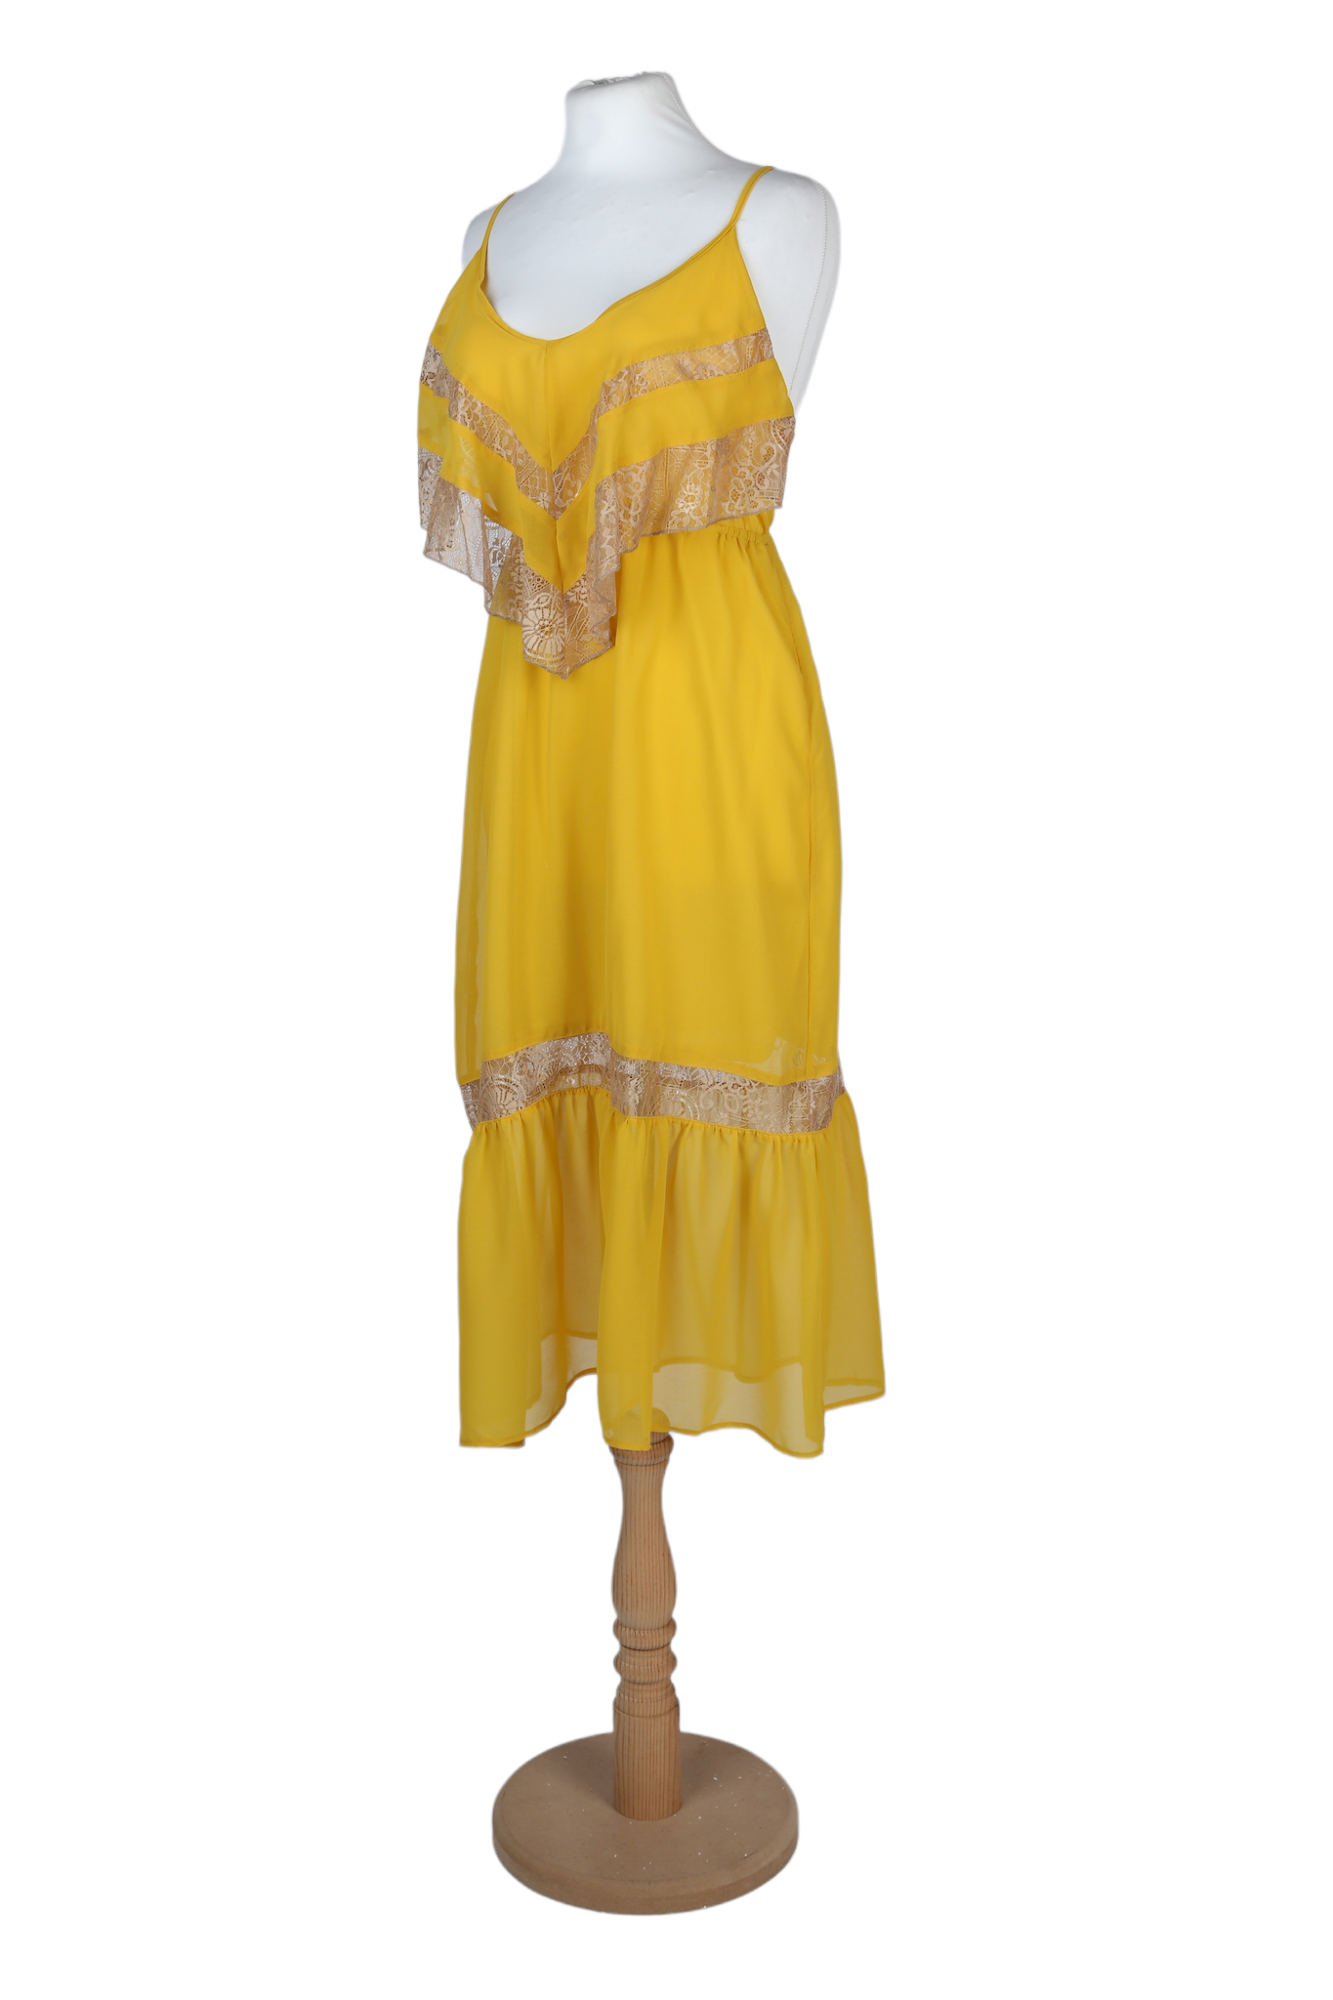 فستان متوسط الطول باللون الأصفر من متجر فلاينق توماتو